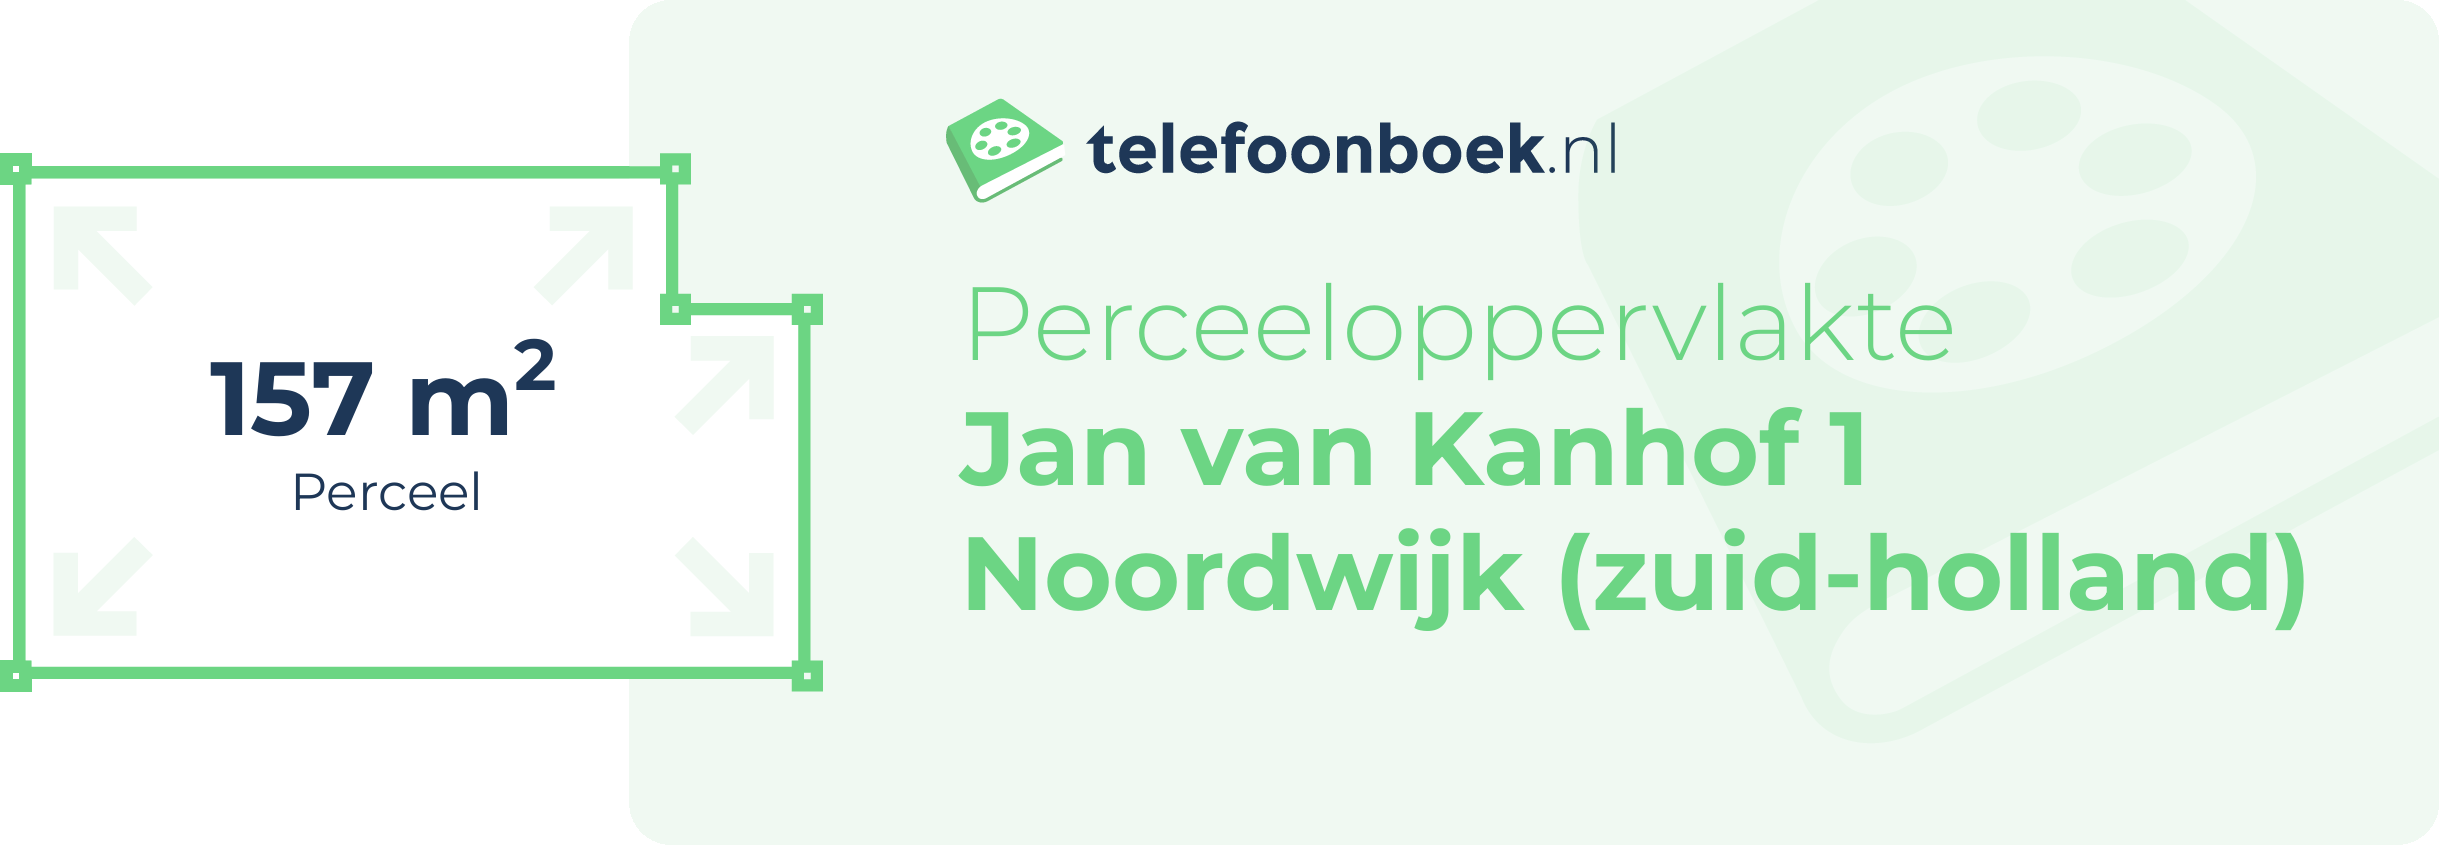 Perceeloppervlakte Jan Van Kanhof 1 Noordwijk (Zuid-Holland)